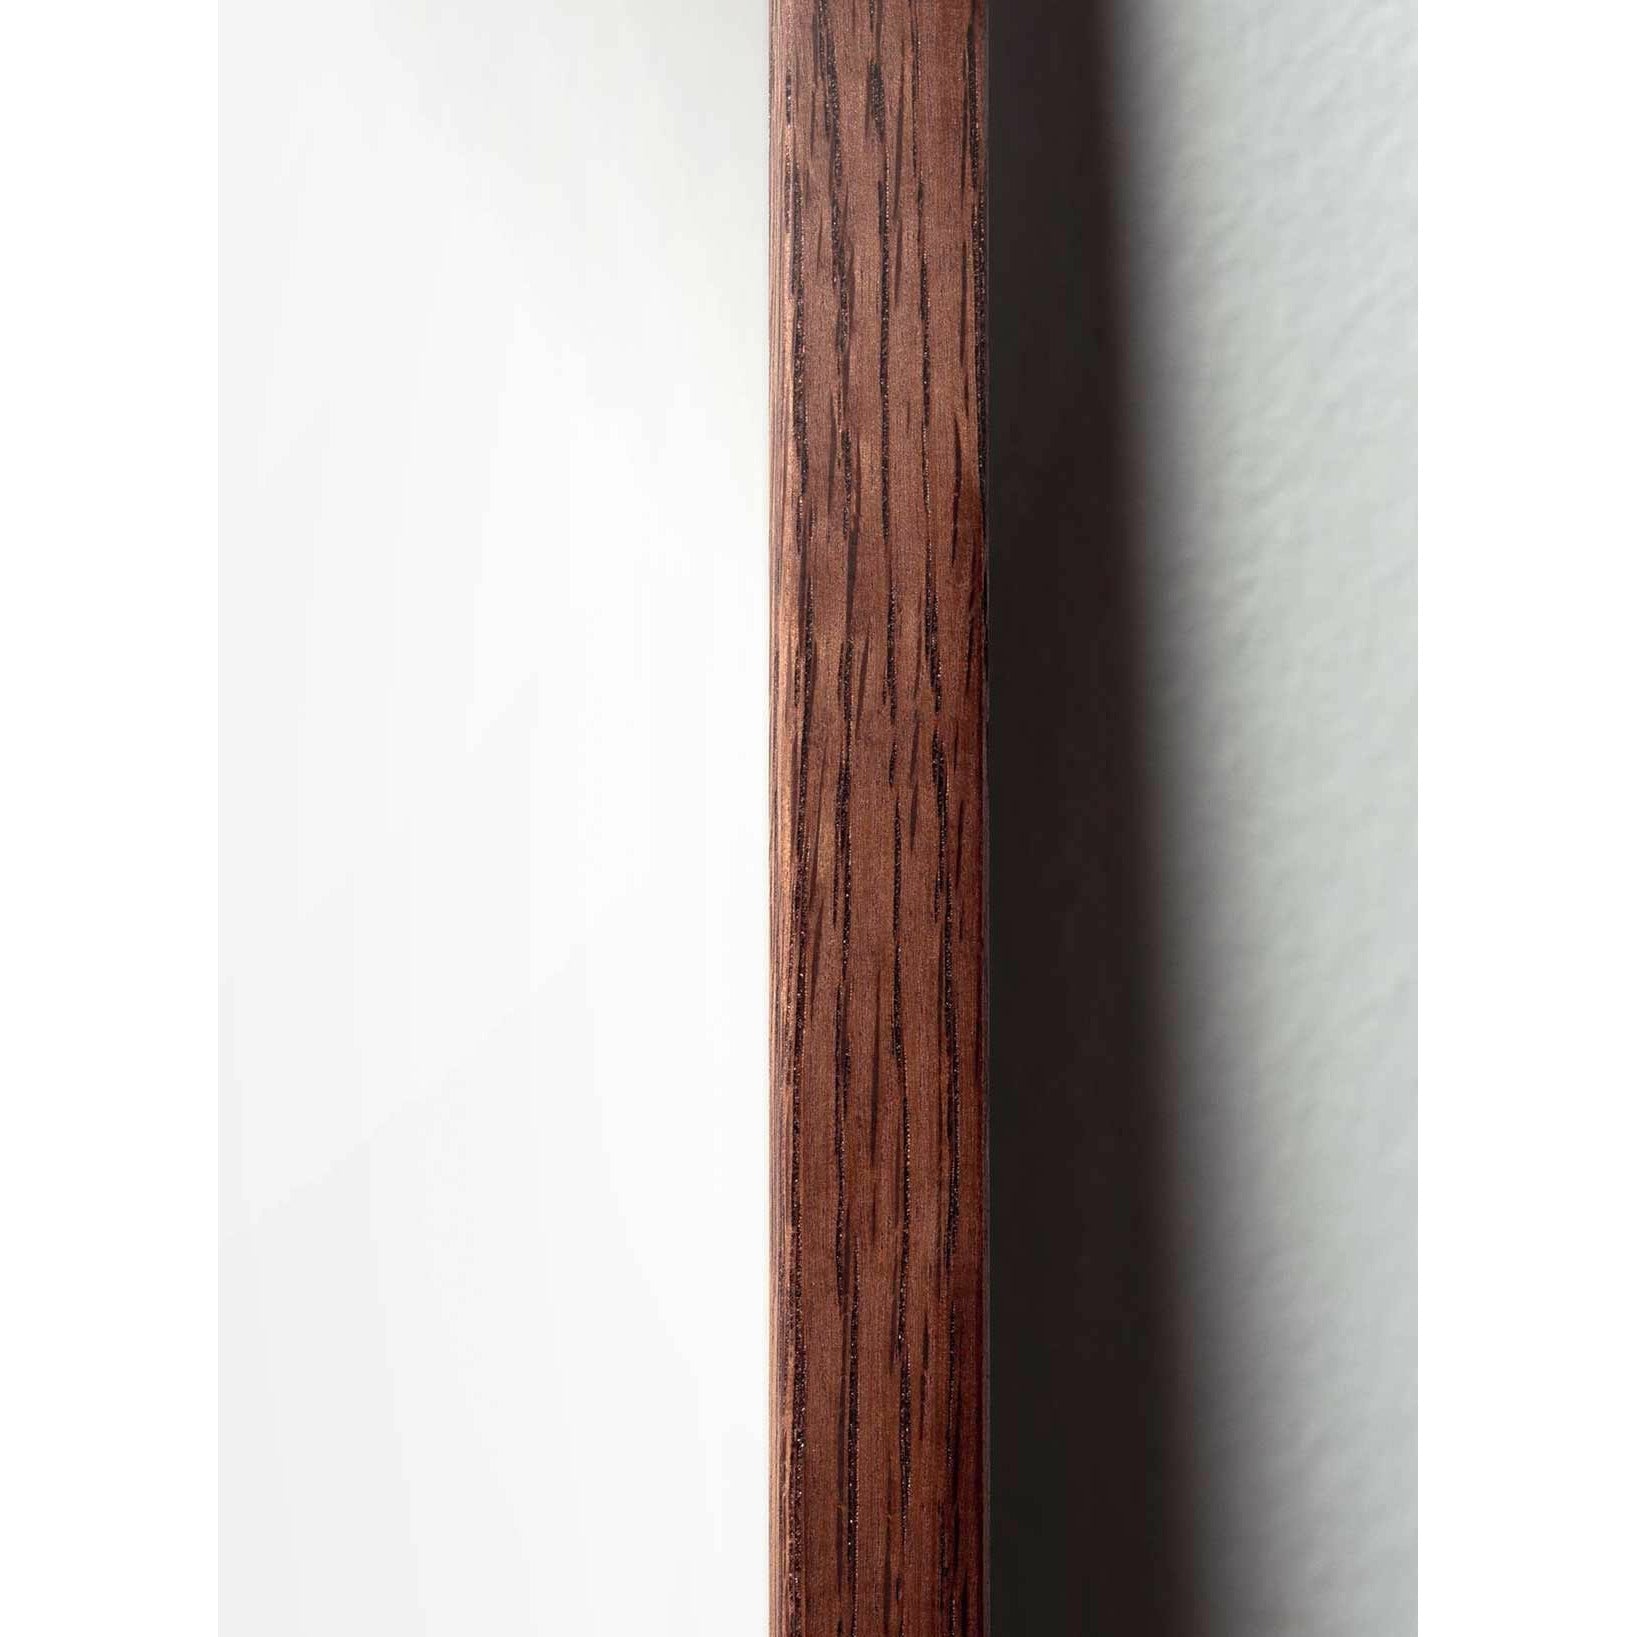 Póster clásico de cono de pino de creación, marco de madera oscura 70x100 cm, fondo de color arena